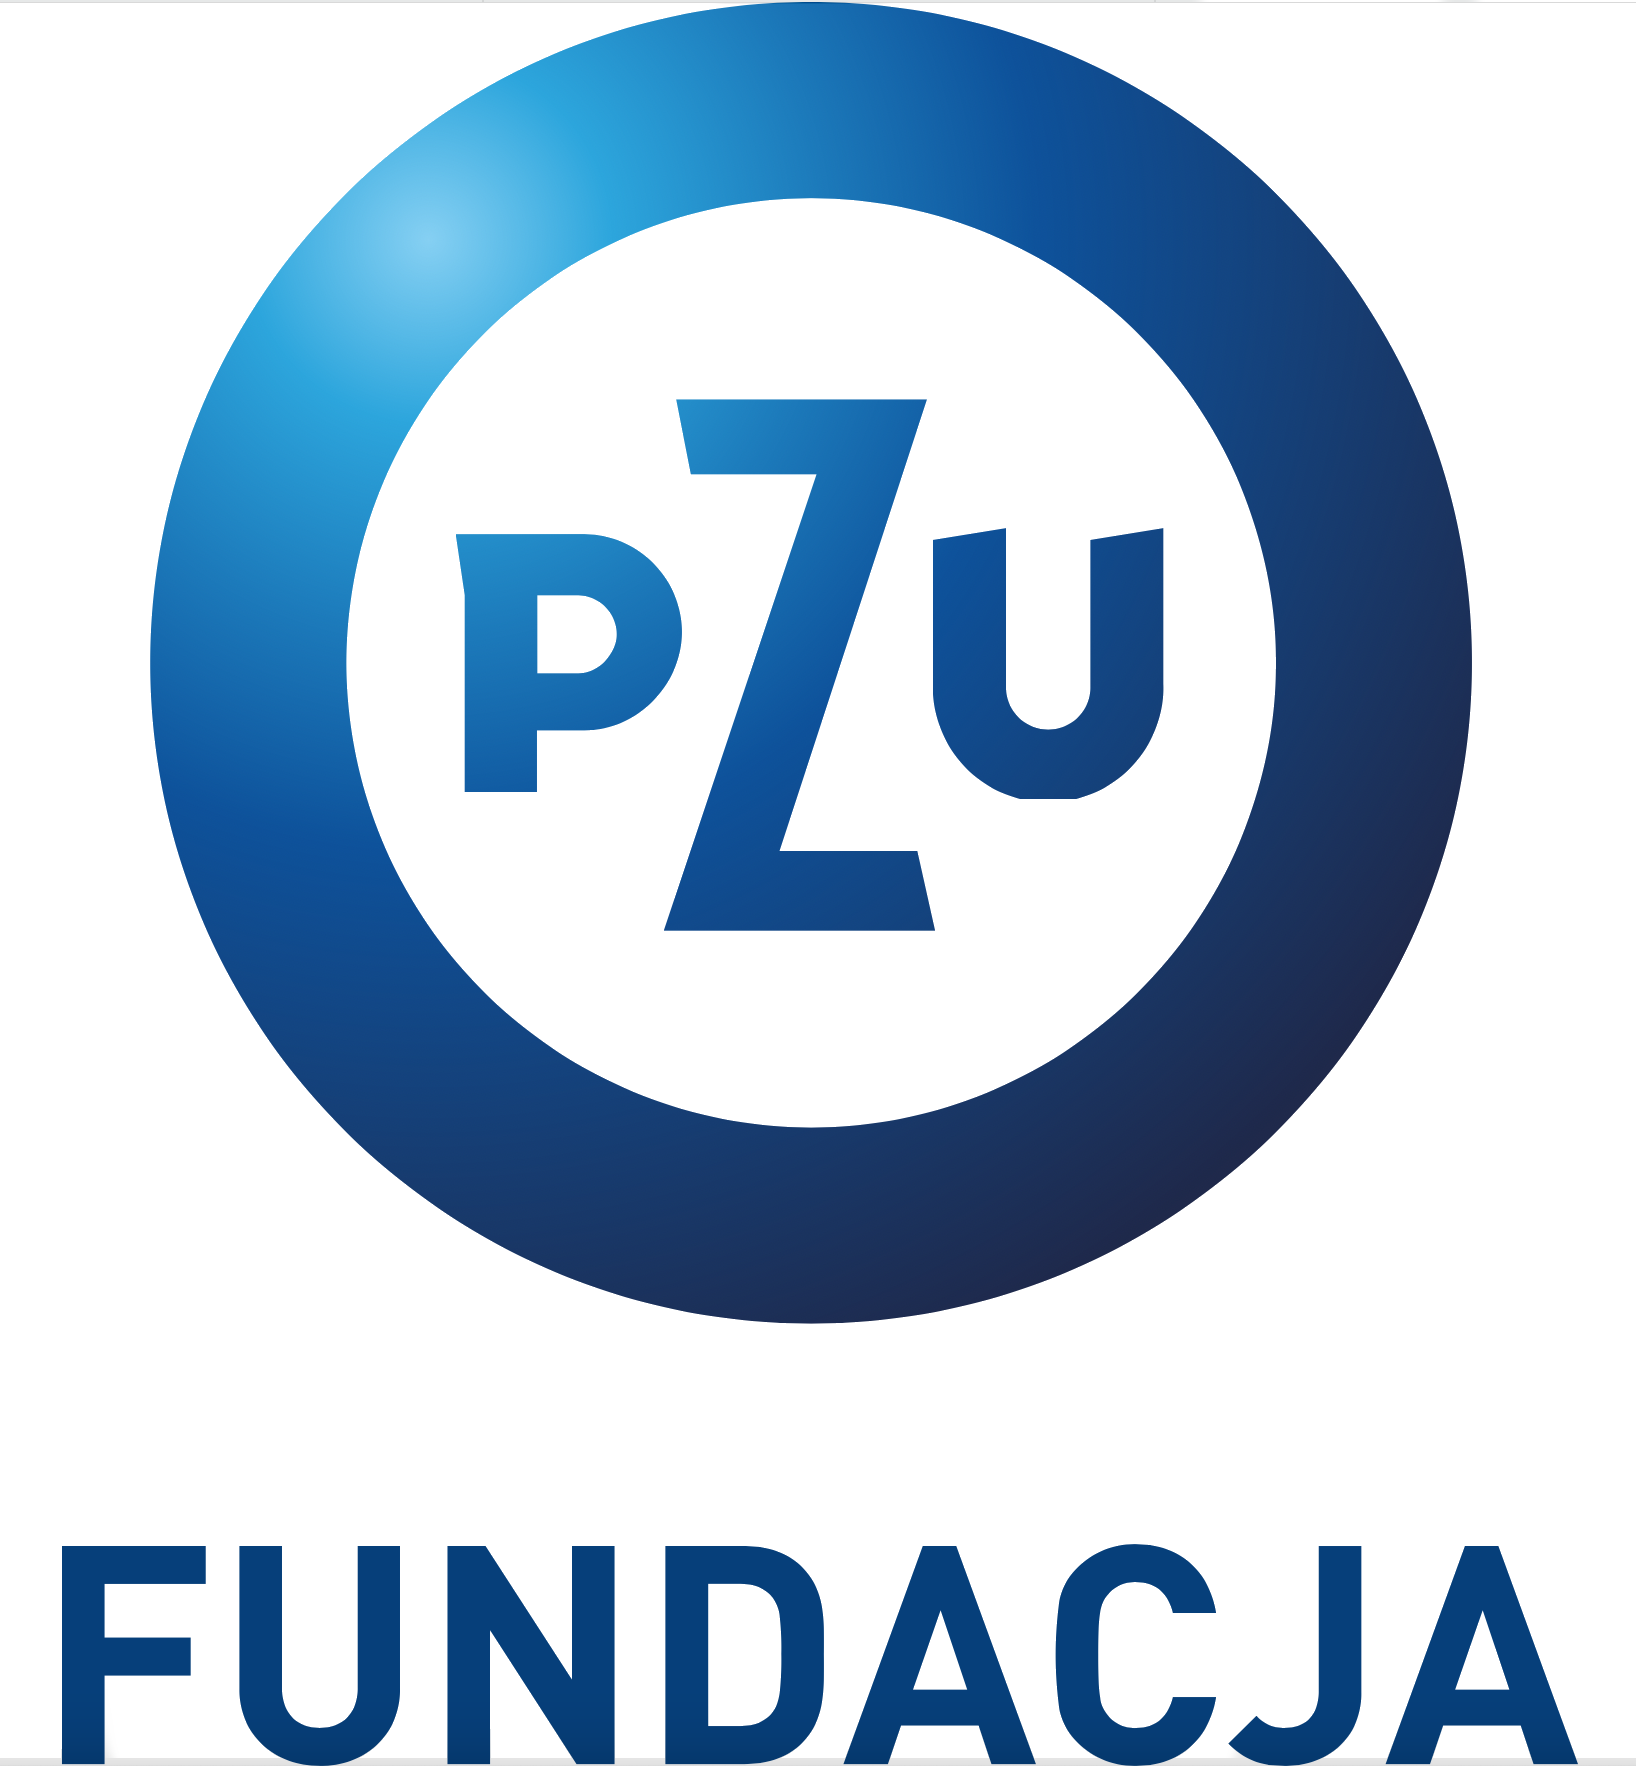 pzu fundacja logo.png